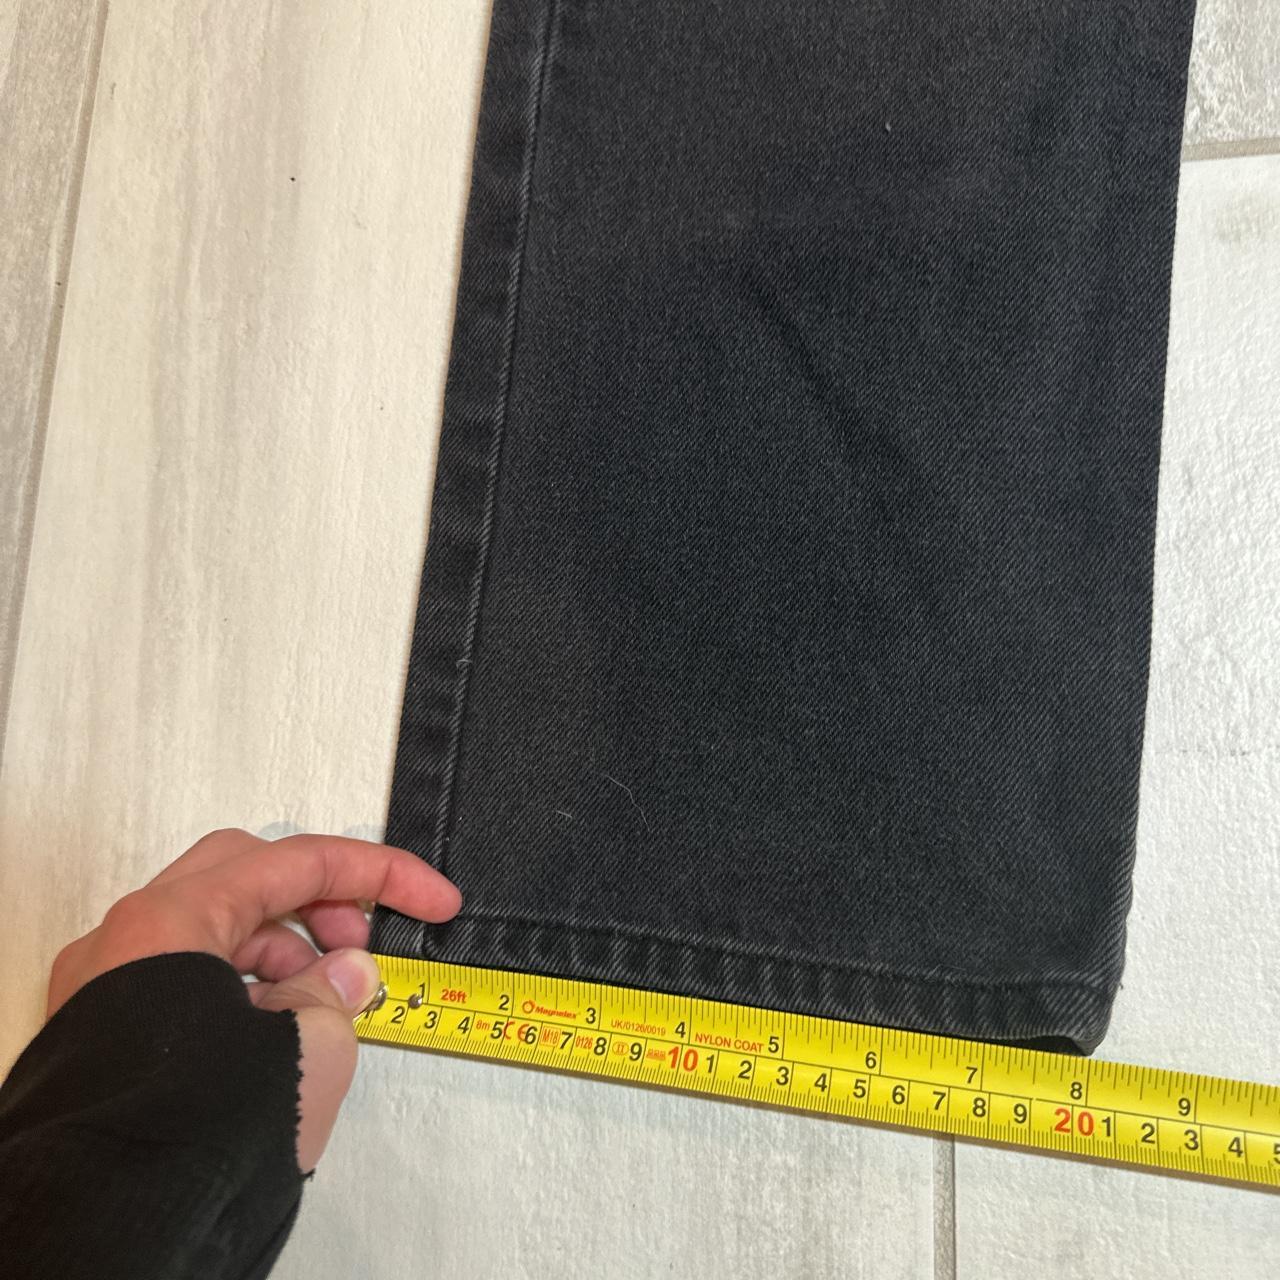 Vintage black baggy skater jeans Size 34/30 Leg... - Depop